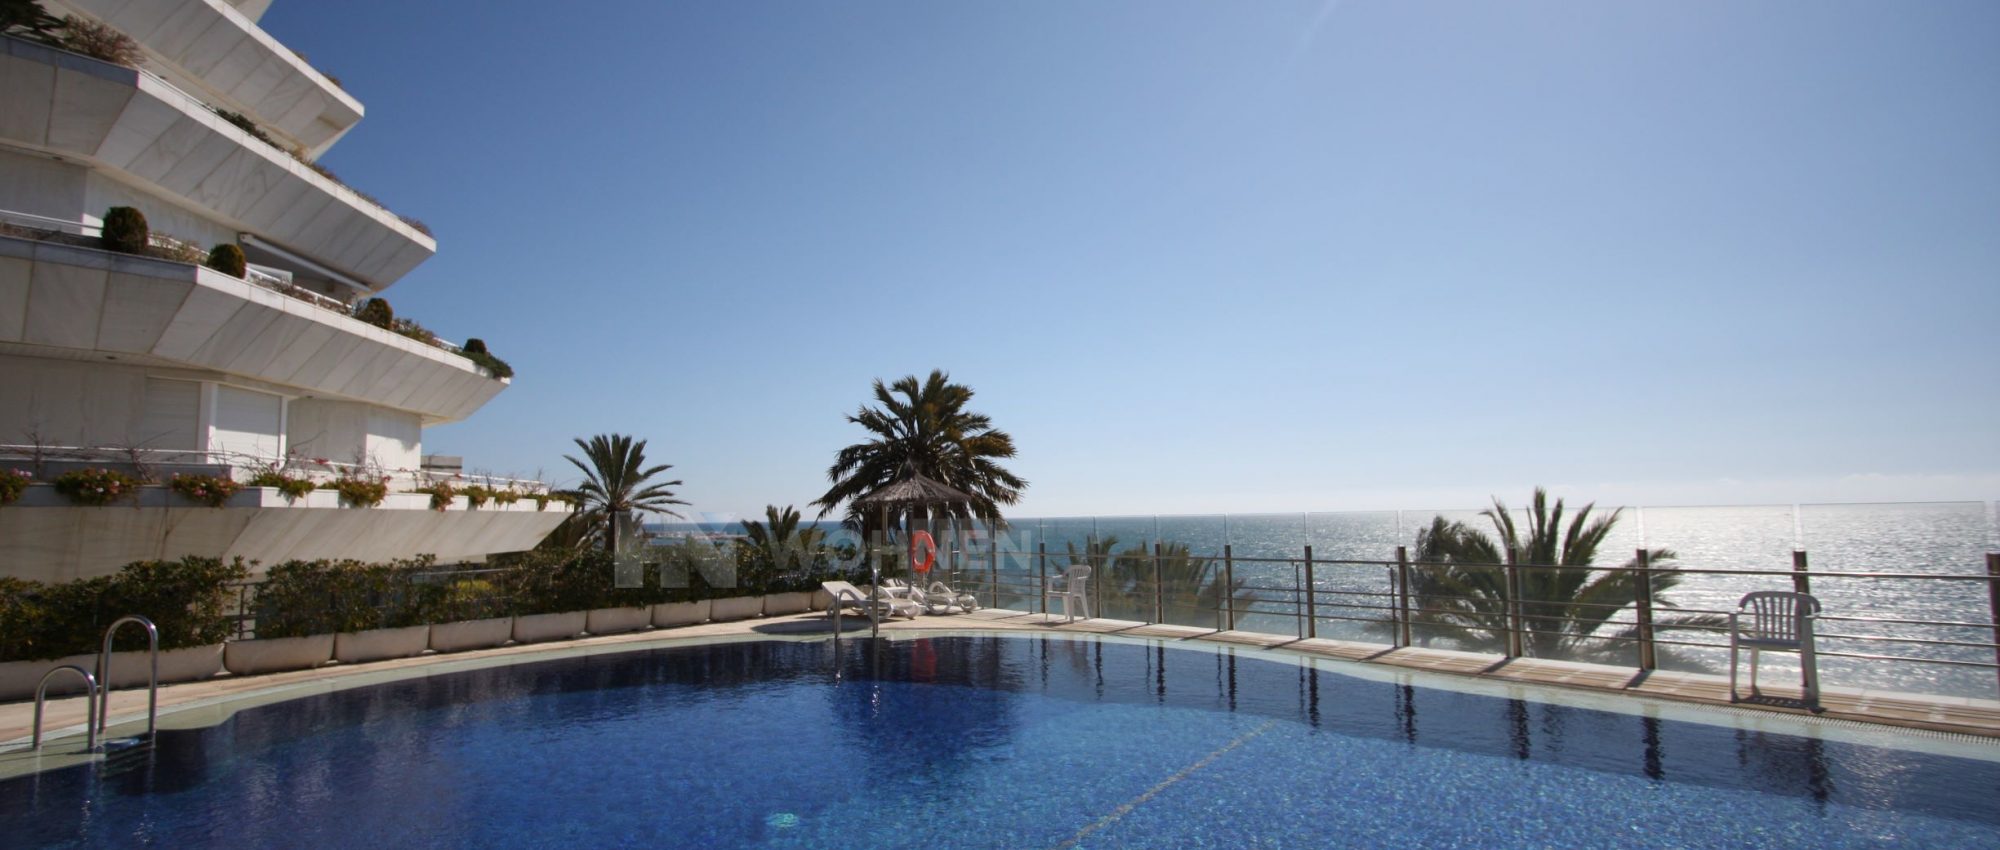 Wunderschönes Strand Apartment in der Wohnanlage Mare Nostrum Marbella